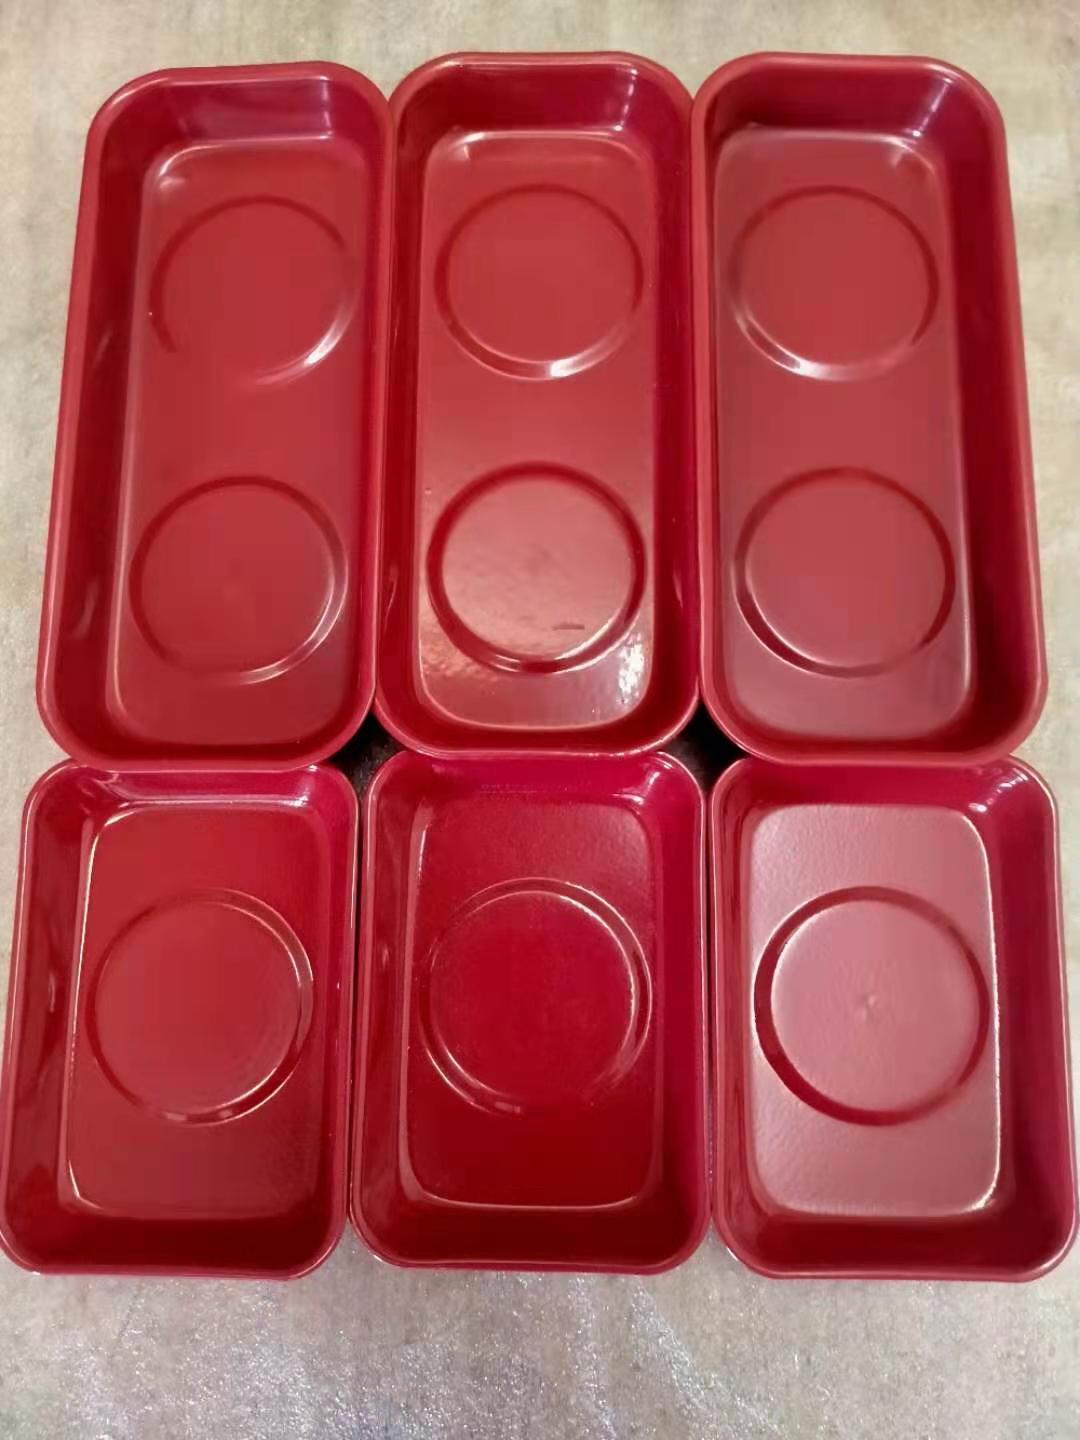 红色喷塑磁性收纳碗 汽保机修磁力盘 底部装配磁铁 网上热销磁碗 可以牢牢吸附在铁制品上在倒挂状态磁碗和小零件都不会滑落5